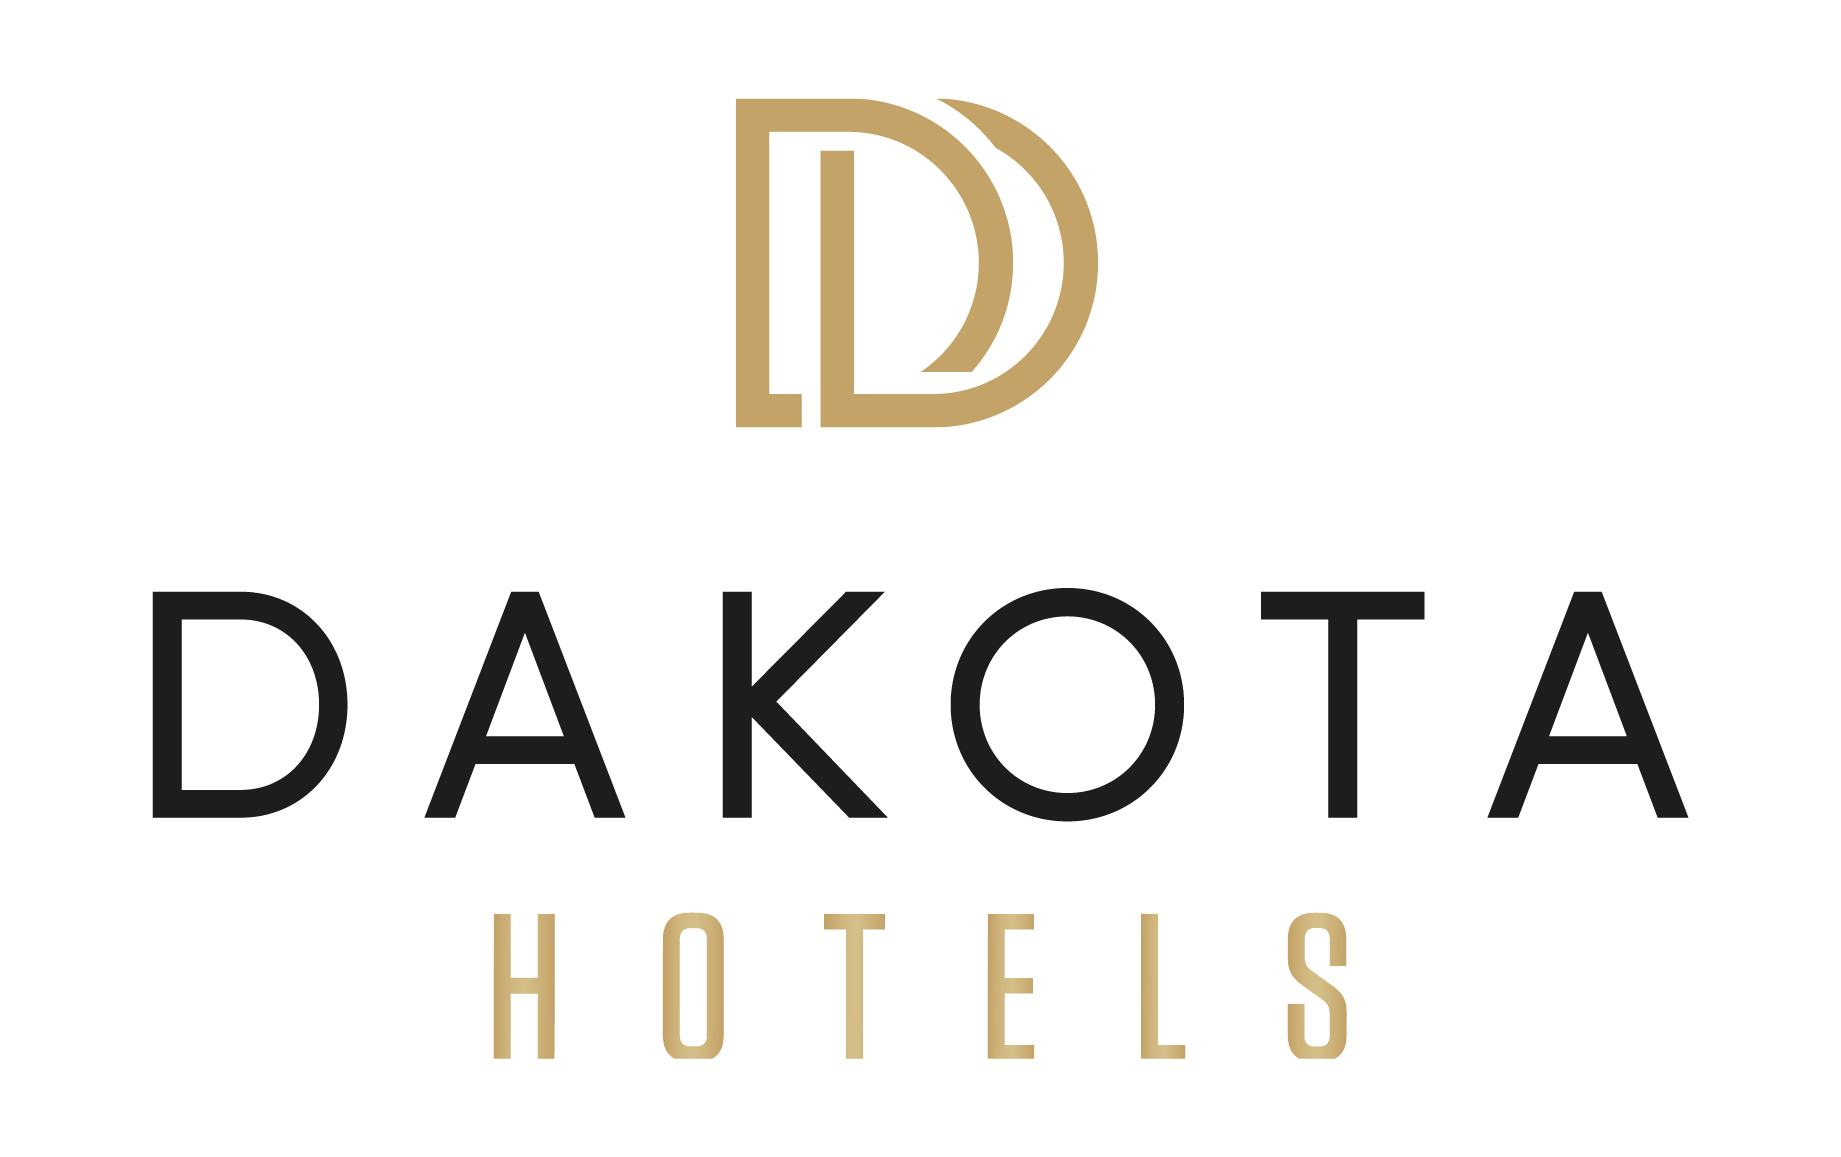 Dakota Hotels